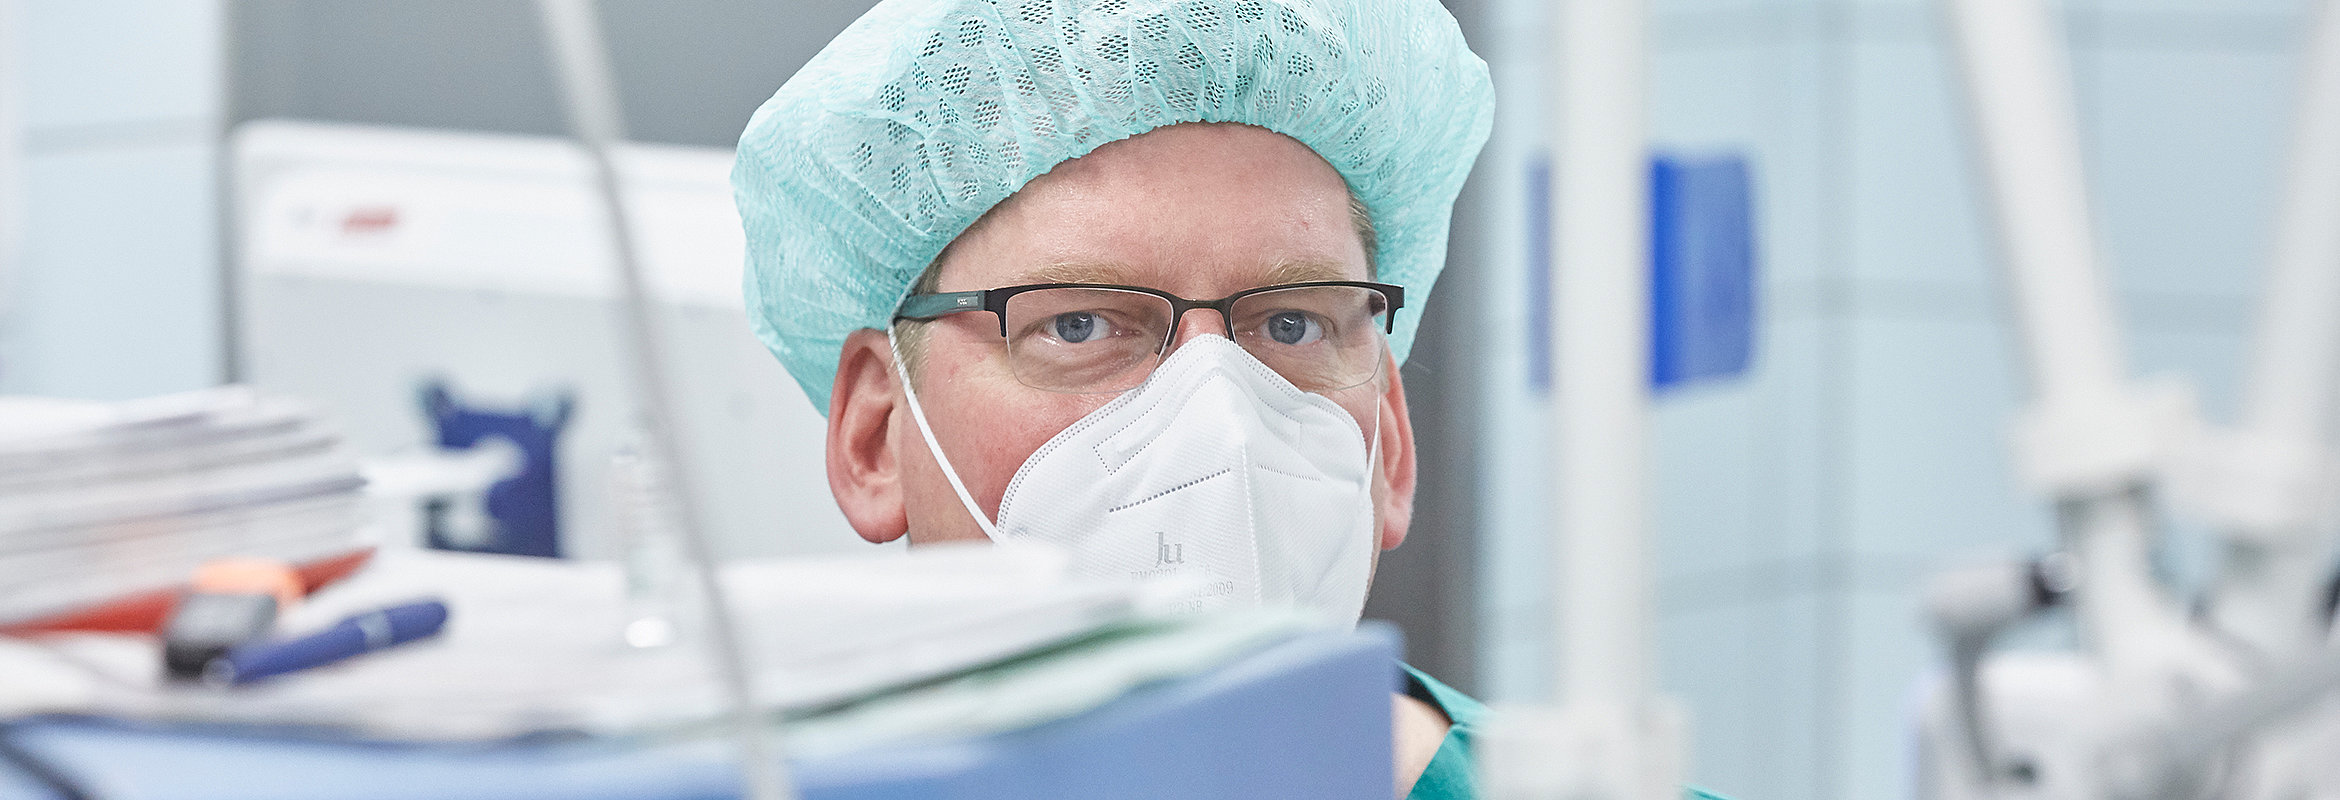 Dr. med. Jens Kling, Chefarzt der Klinik für Anästhesie, Intensiv- und Notfallmedizin Kirchheimbolanden im OP